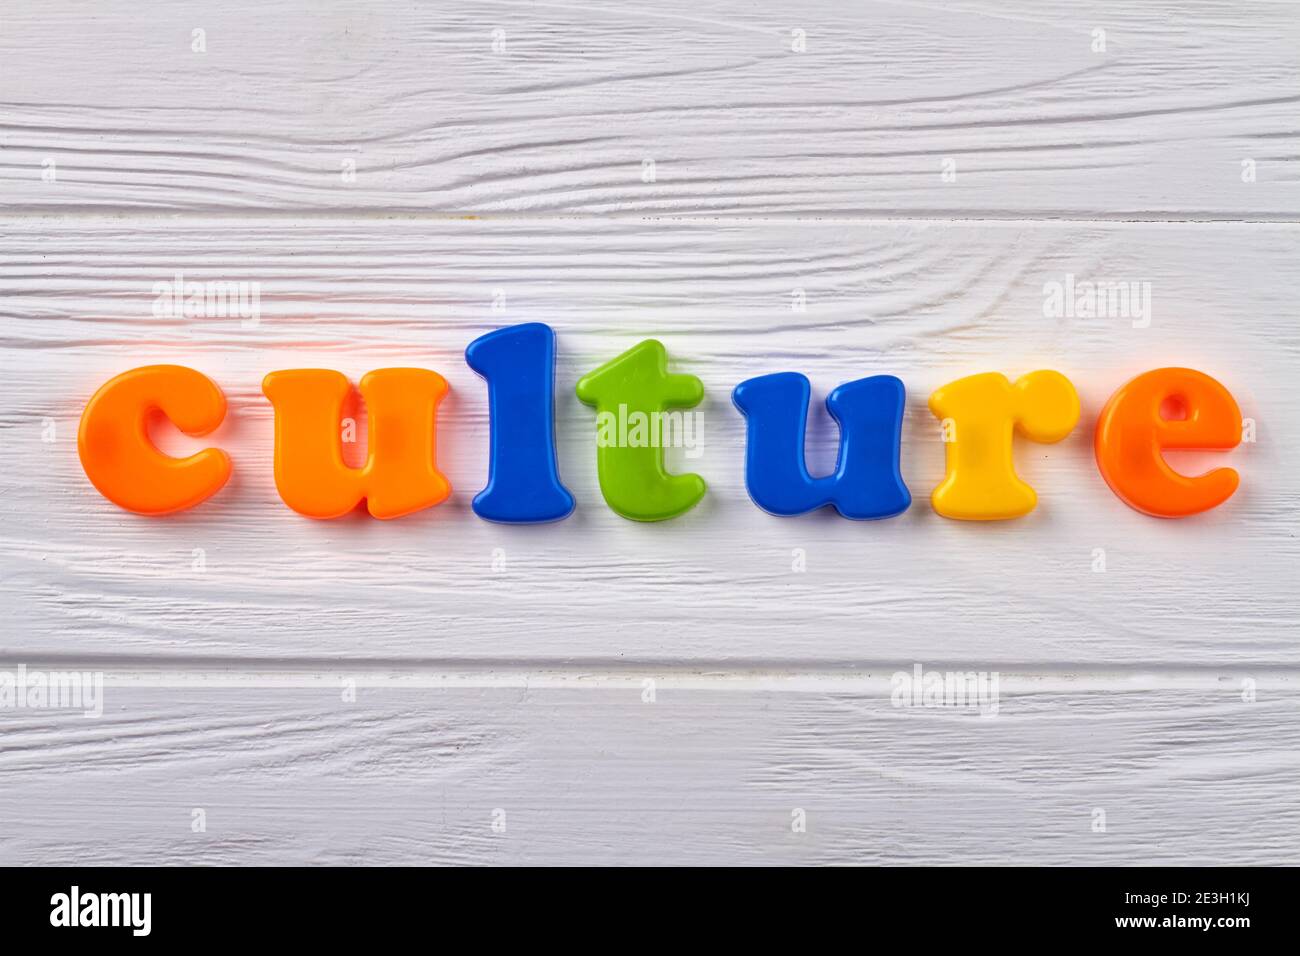 Kultur als nationale Errungenschaft. Stockfoto